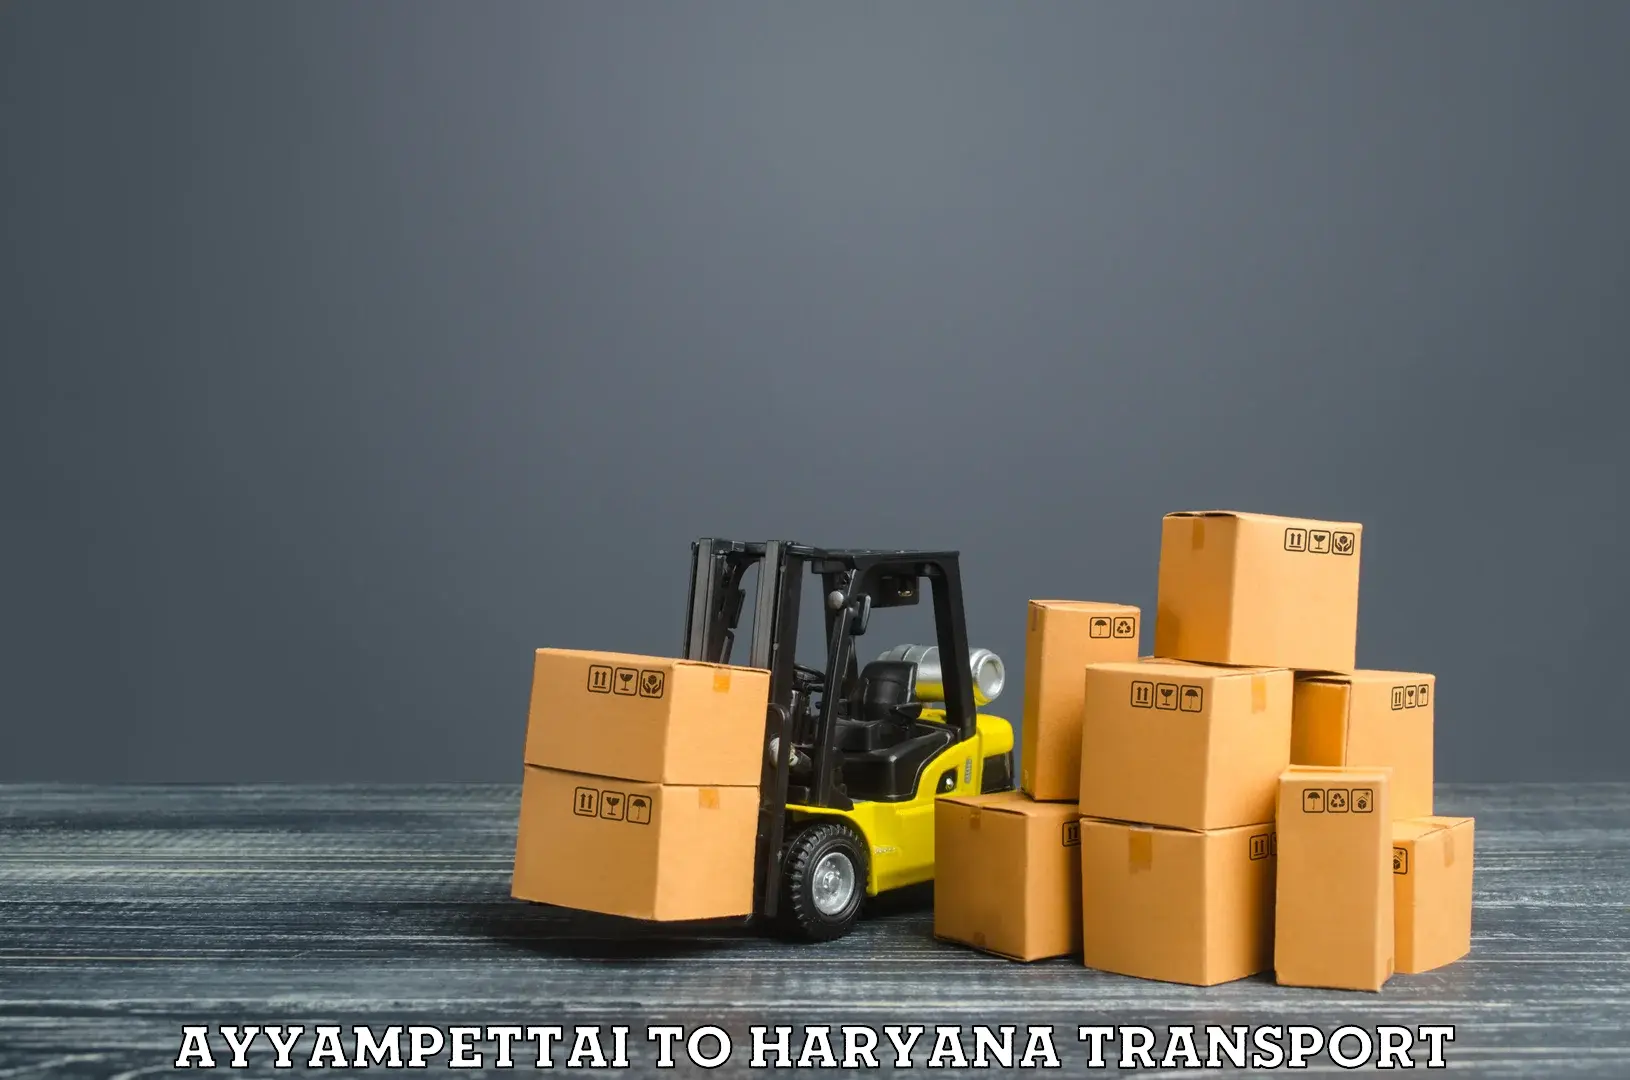 Furniture transport service Ayyampettai to Charkhari